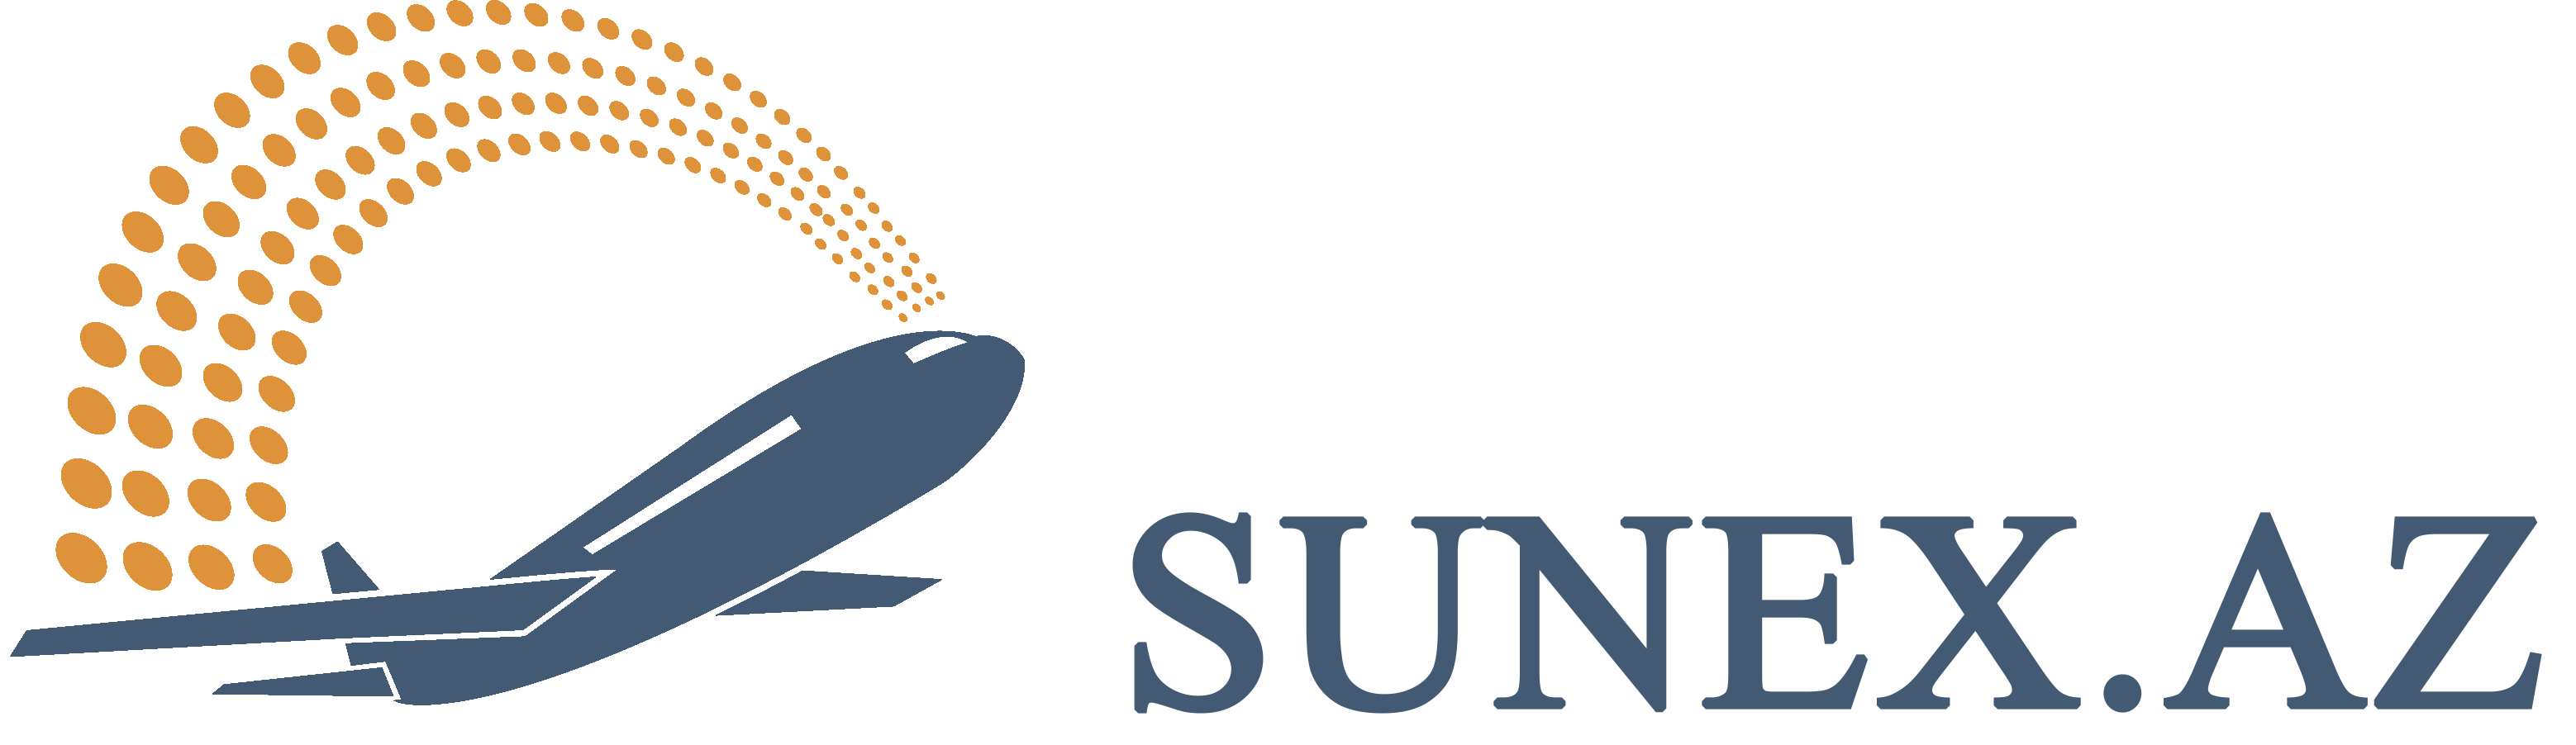 Sunex Az Logo